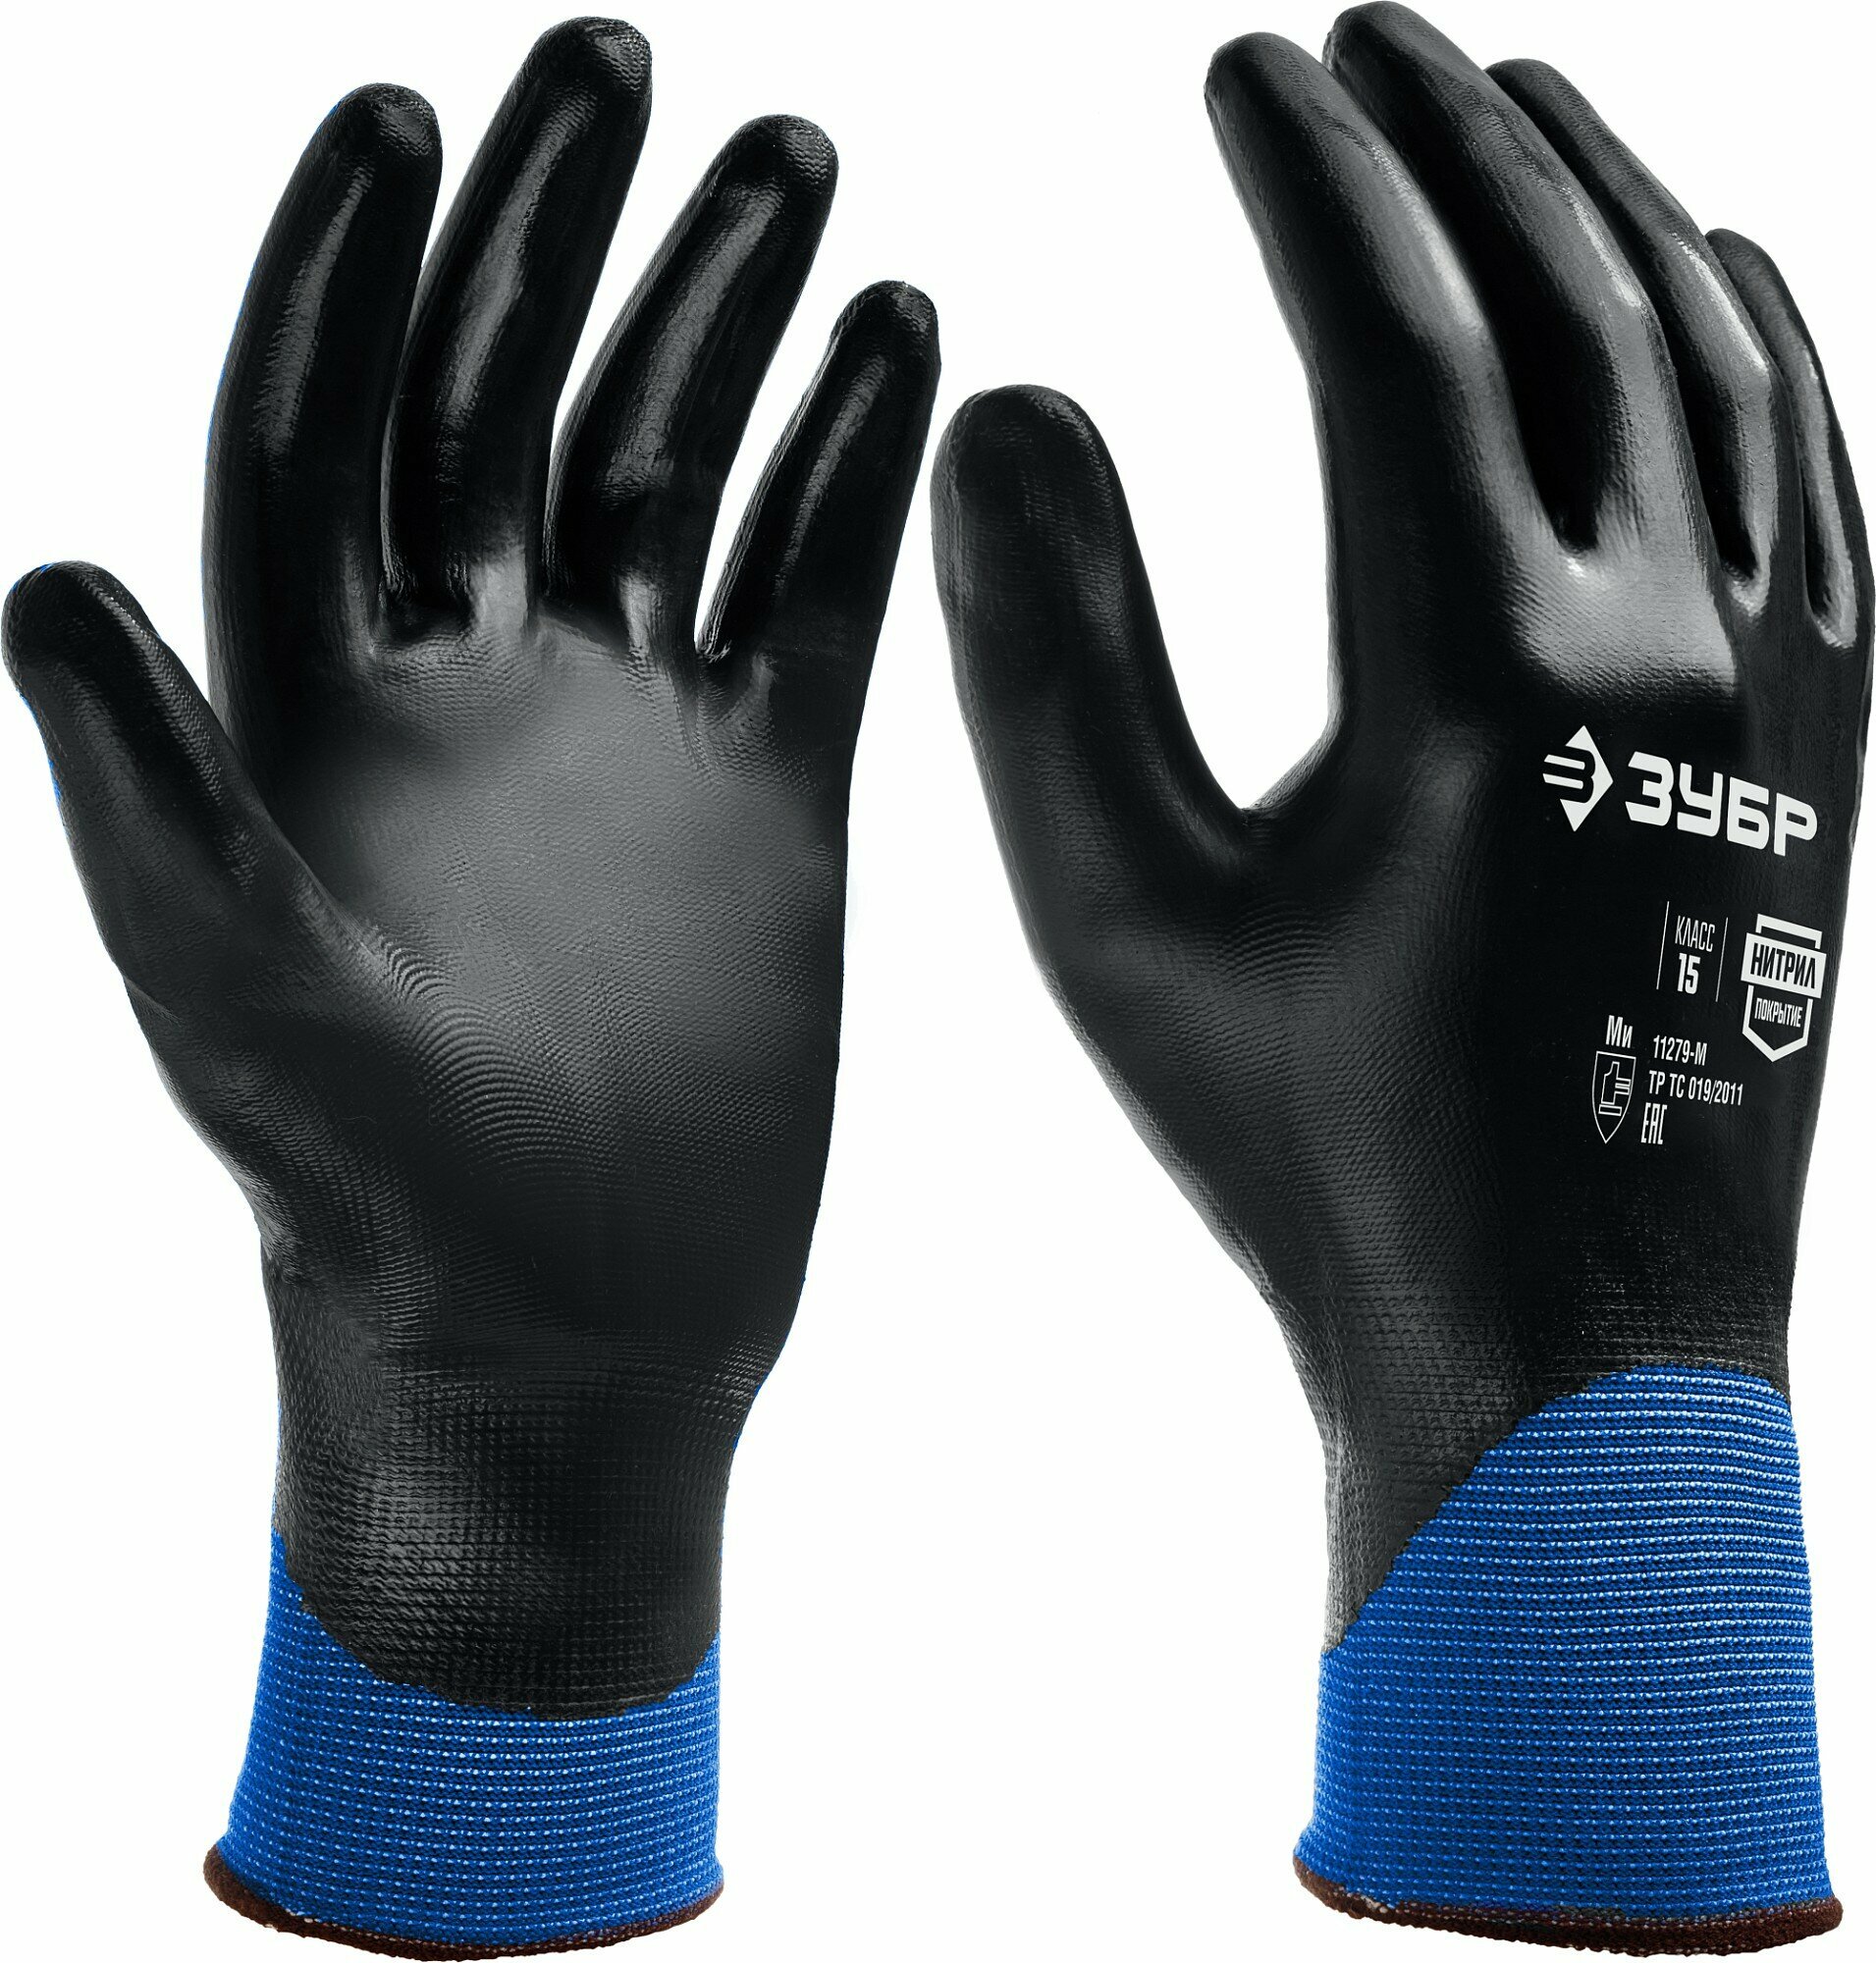 ЗУБР МЕХАНИК+ тонкое нитриловое покрытие полный облив ладони размер XL маслобензостойкие перчатки Профессионал (11279-XL)